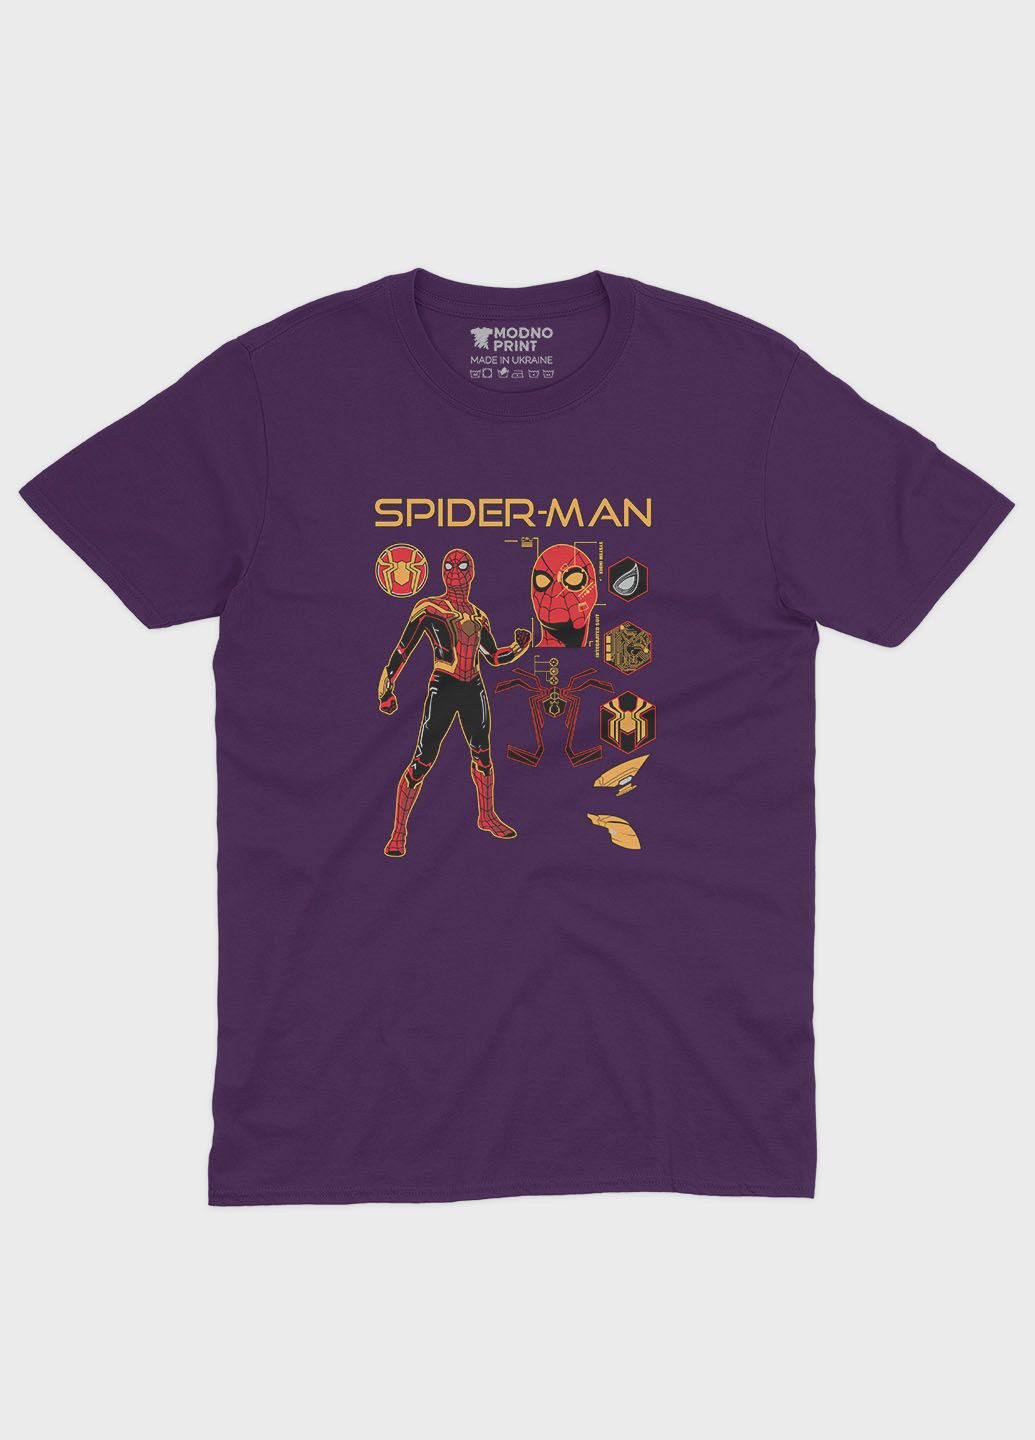 Фіолетова демісезонна футболка для дівчинки з принтом супергероя - людина-павук (ts001-1-dby-006-014-095-g) Modno